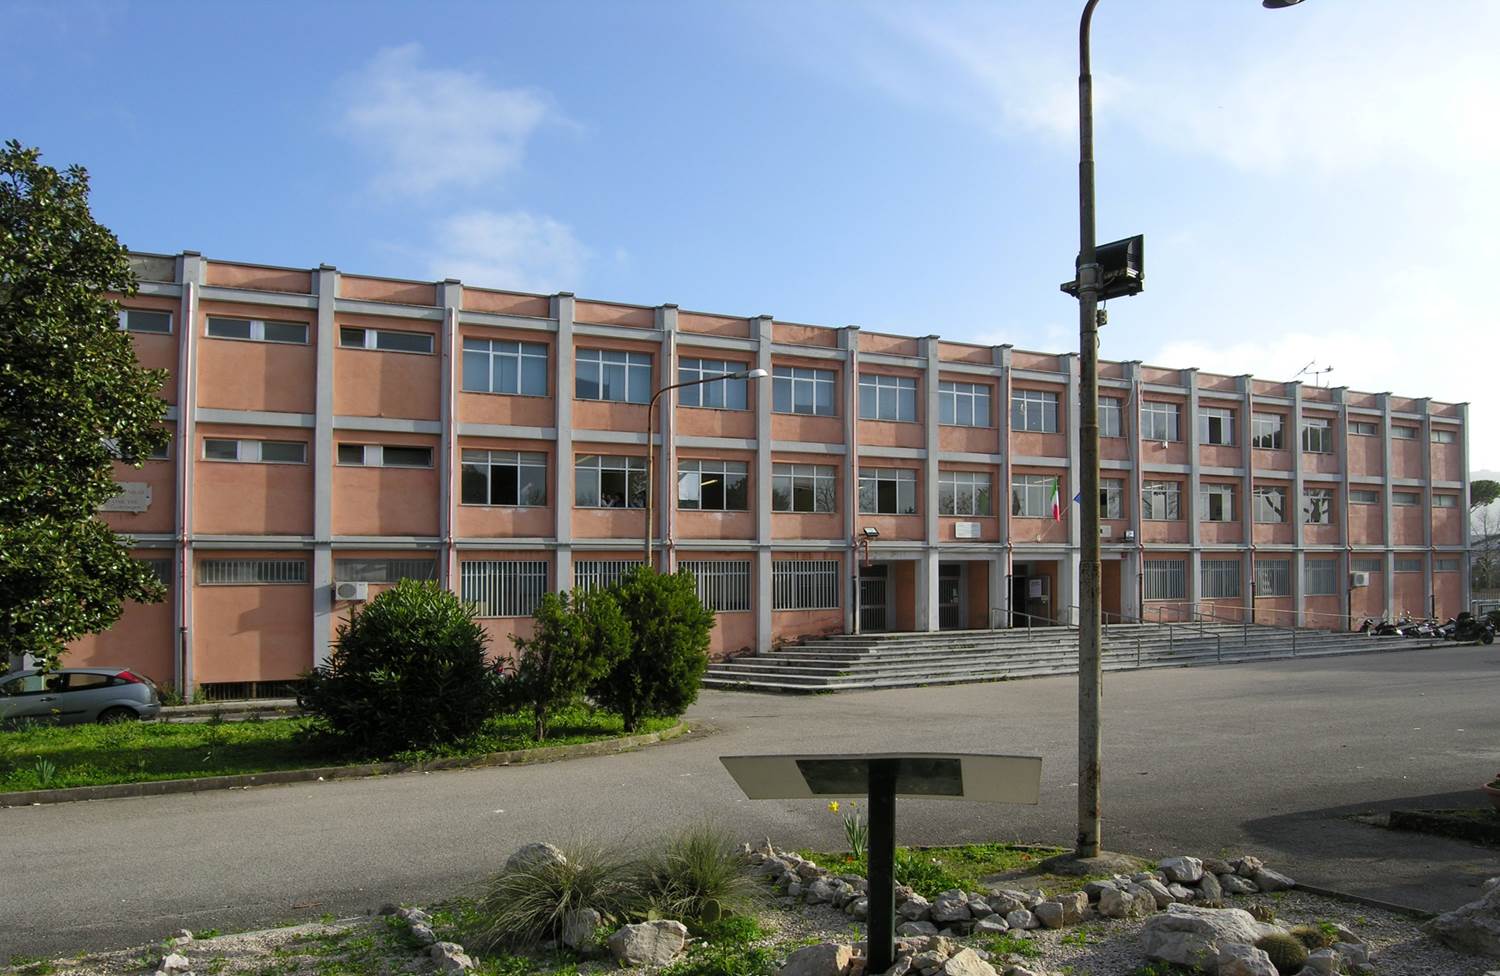 Un tragico evento si è verificato in una scuola di Caserta dove una studentessa di 17 anni ha accoltellato una sua coetanea durante le lezioni serali. La vittima è ora in ospedale con prognosi riservata.